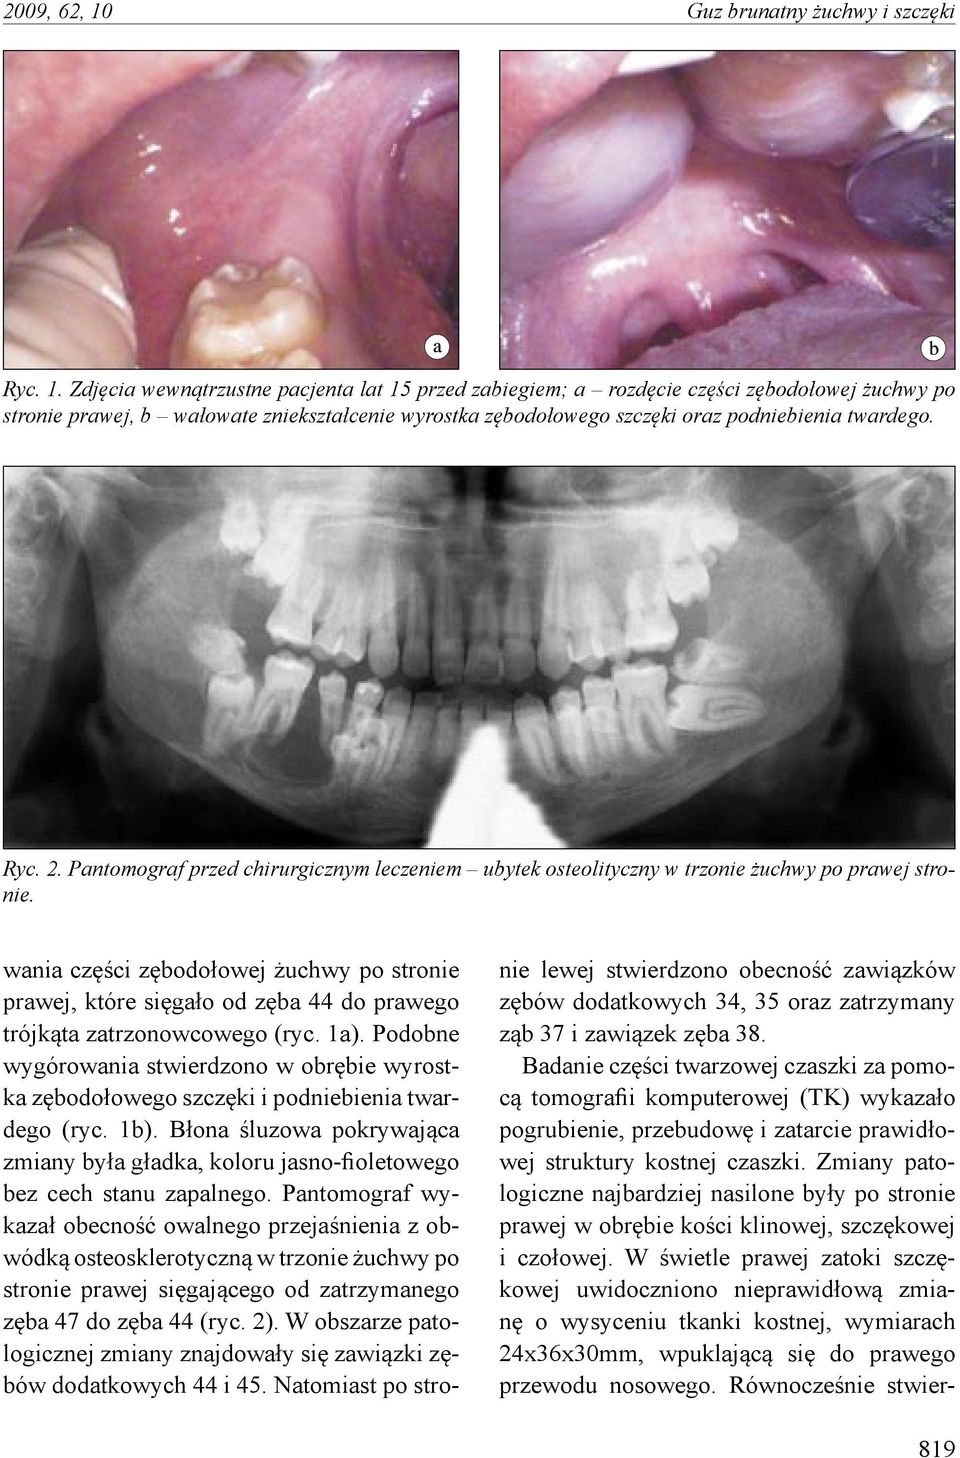 Zdjęcia wewnątrzustne pacjenta lat 15 przed zabiegiem; a rozdęcie części zębodołowej żuchwy po stronie prawej, b wałowate zniekształcenie wyrostka zębodołowego szczęki oraz podniebienia twardego. Ryc.